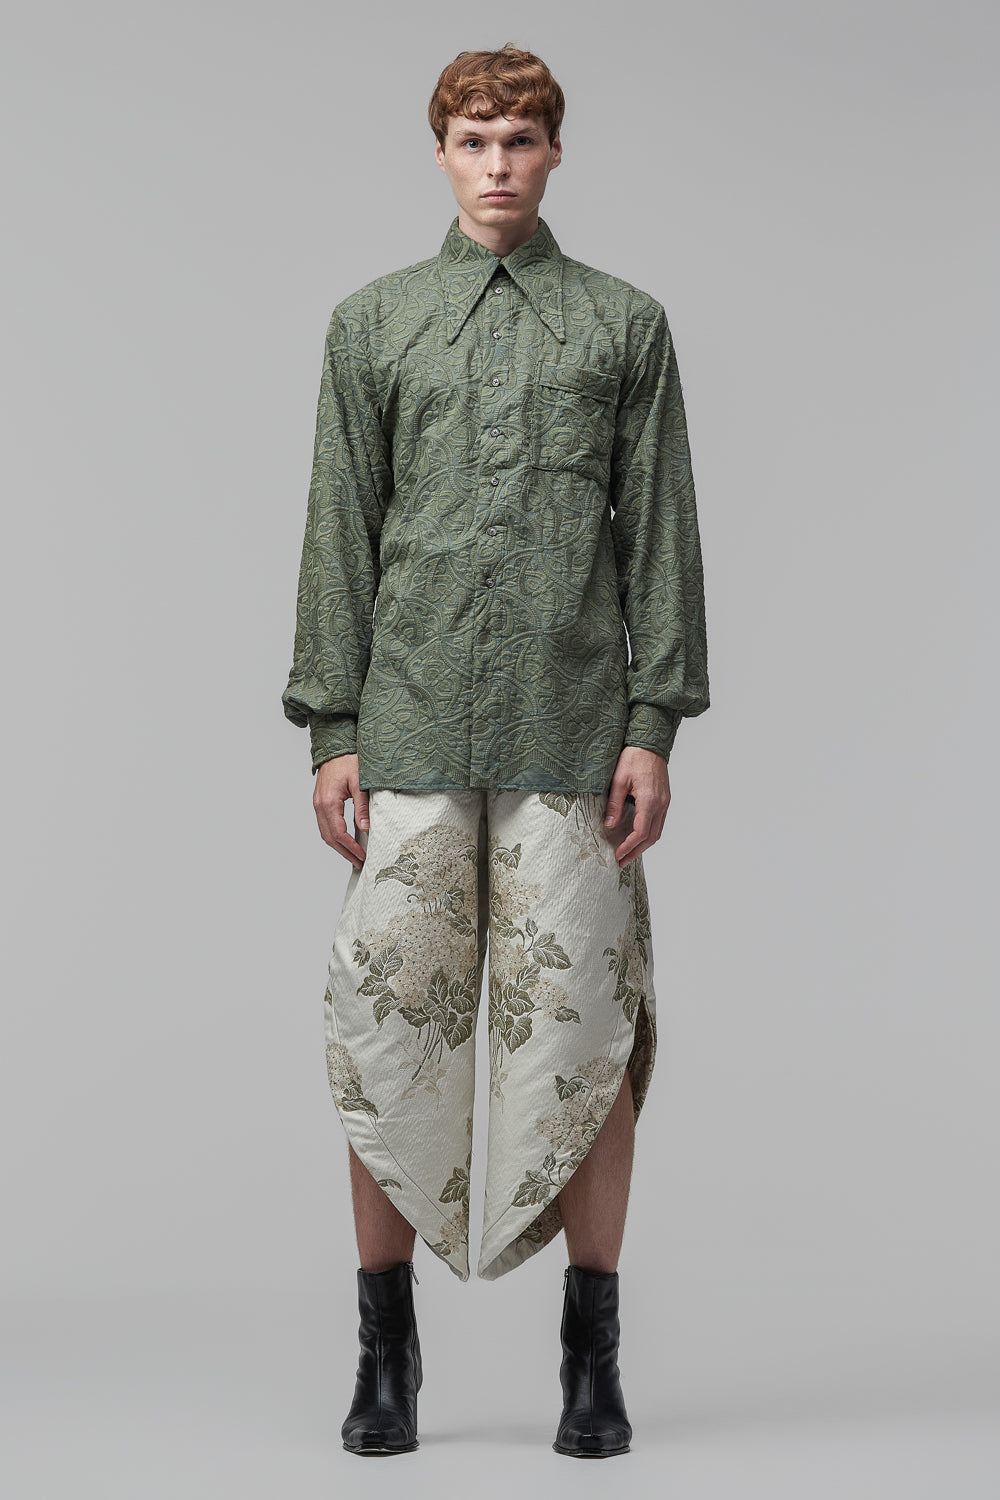 Camisa de Mangas Longas em Algodão Verde-Eucalipto Bordado ao Estilo Art-Nouveau